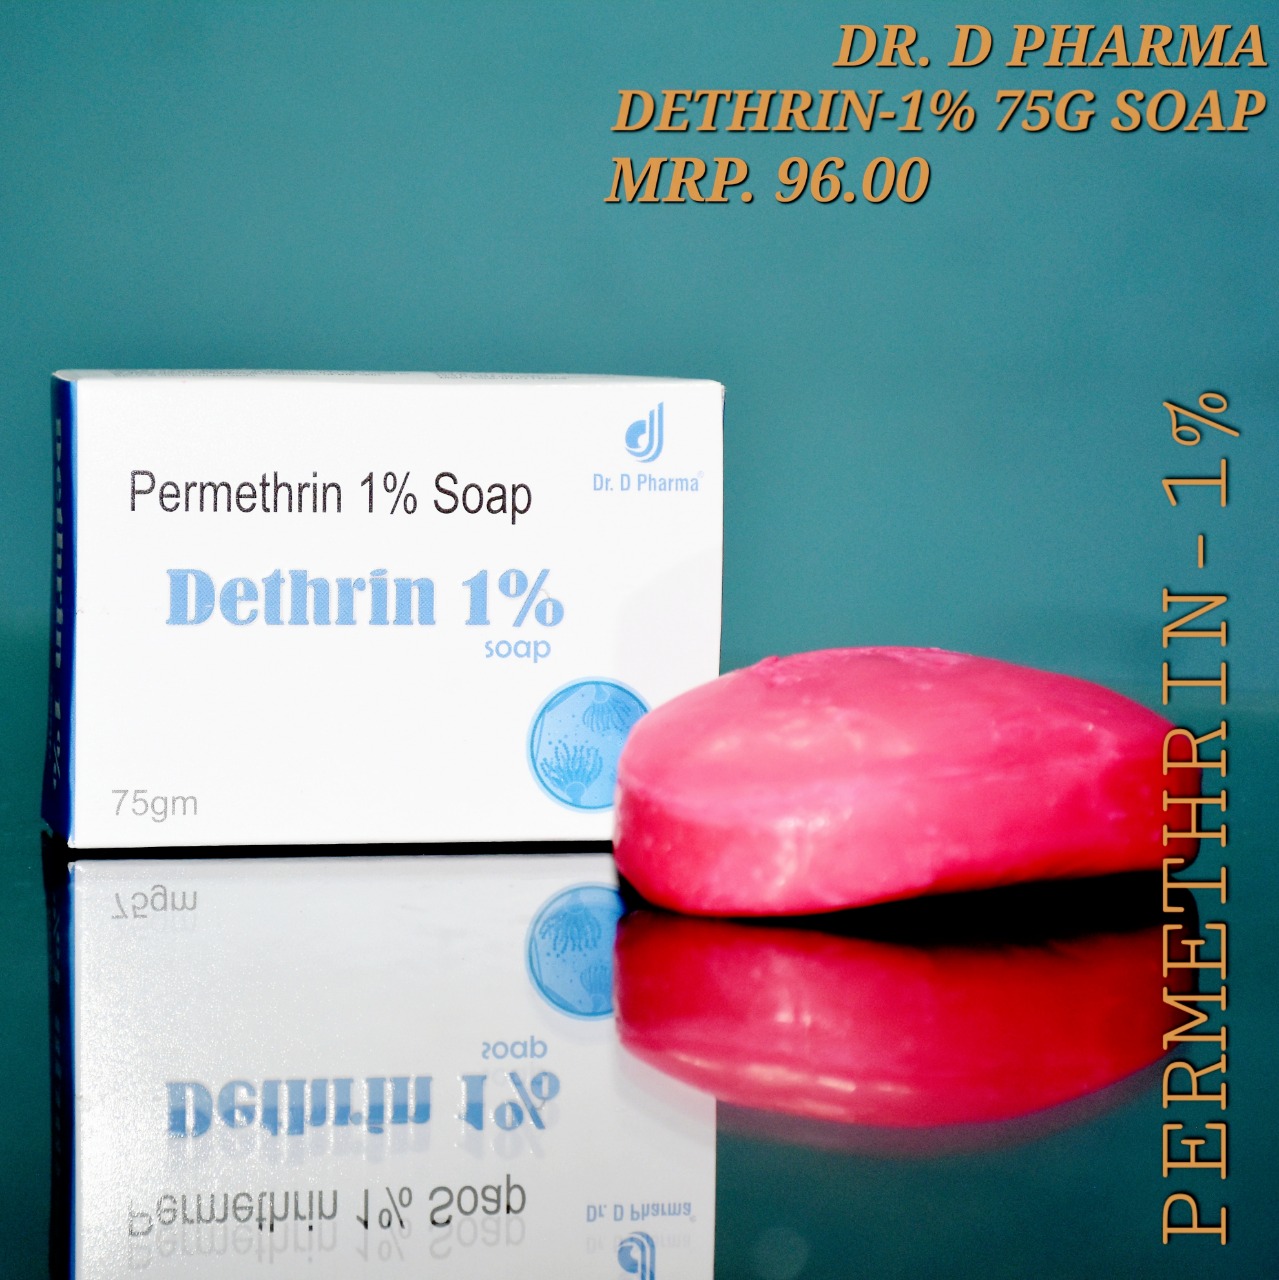 DETHRIN 1 SOAP